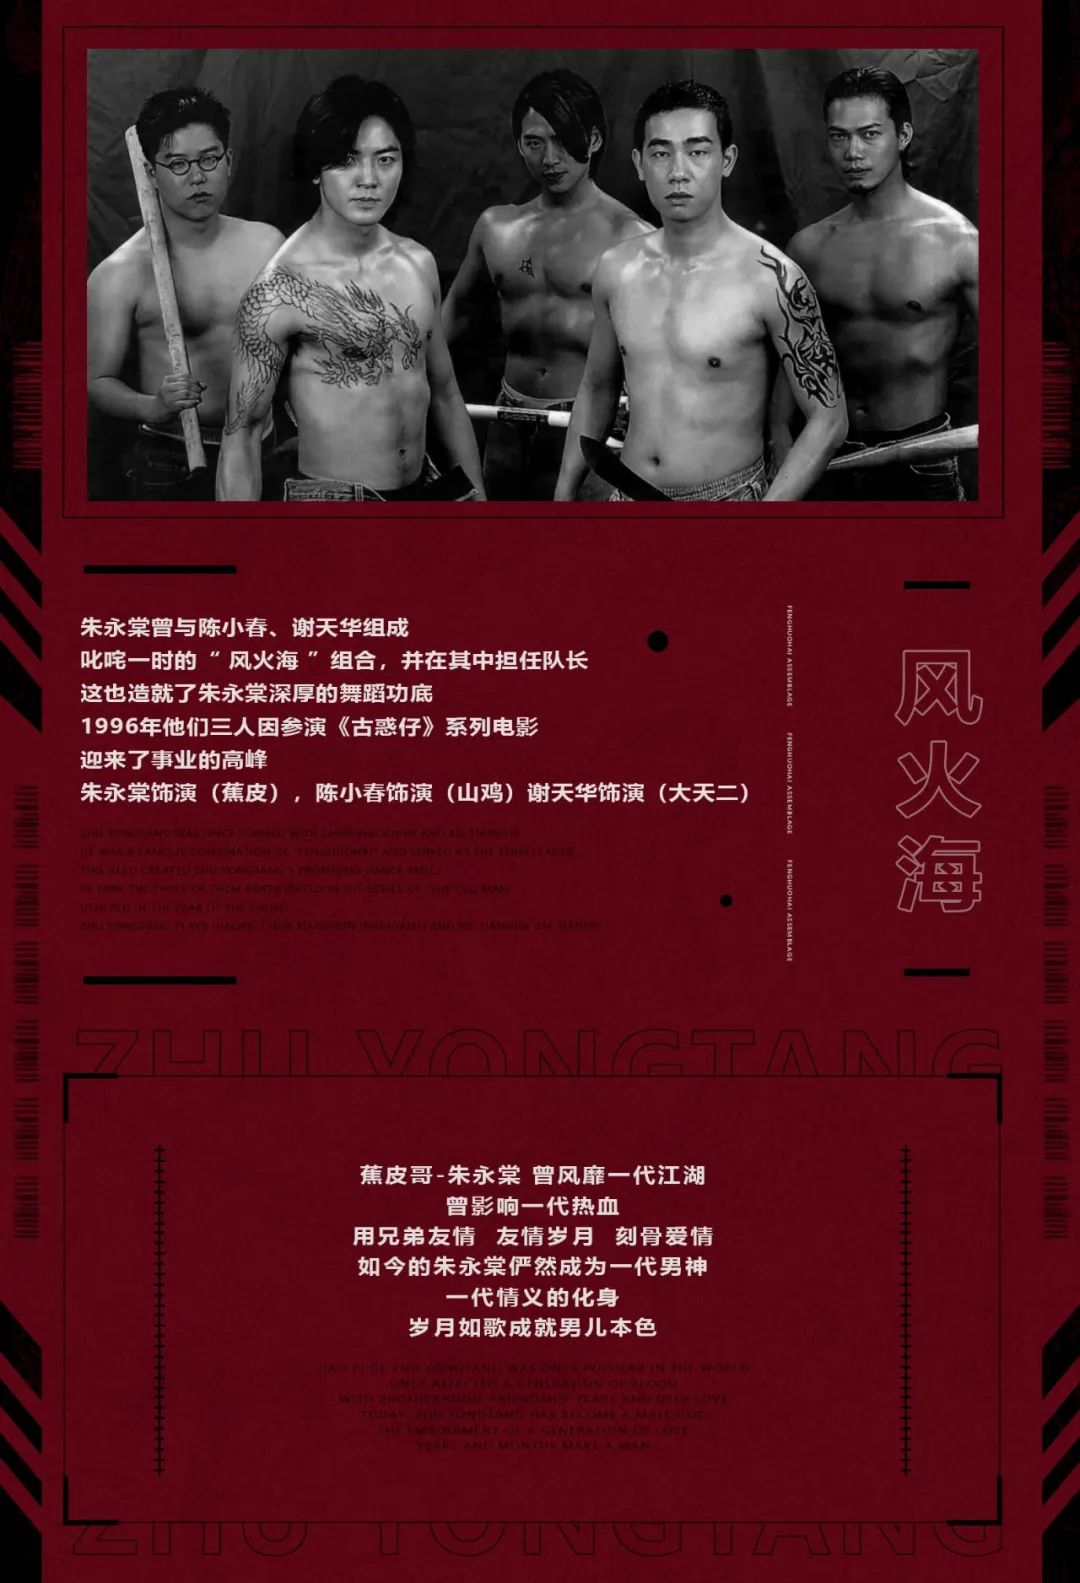 Tang club x 动力火车 | 11/18 古惑仔 - 朱永棠,风云再起，快意江湖-博罗TANG CLUB/TANG酒吧